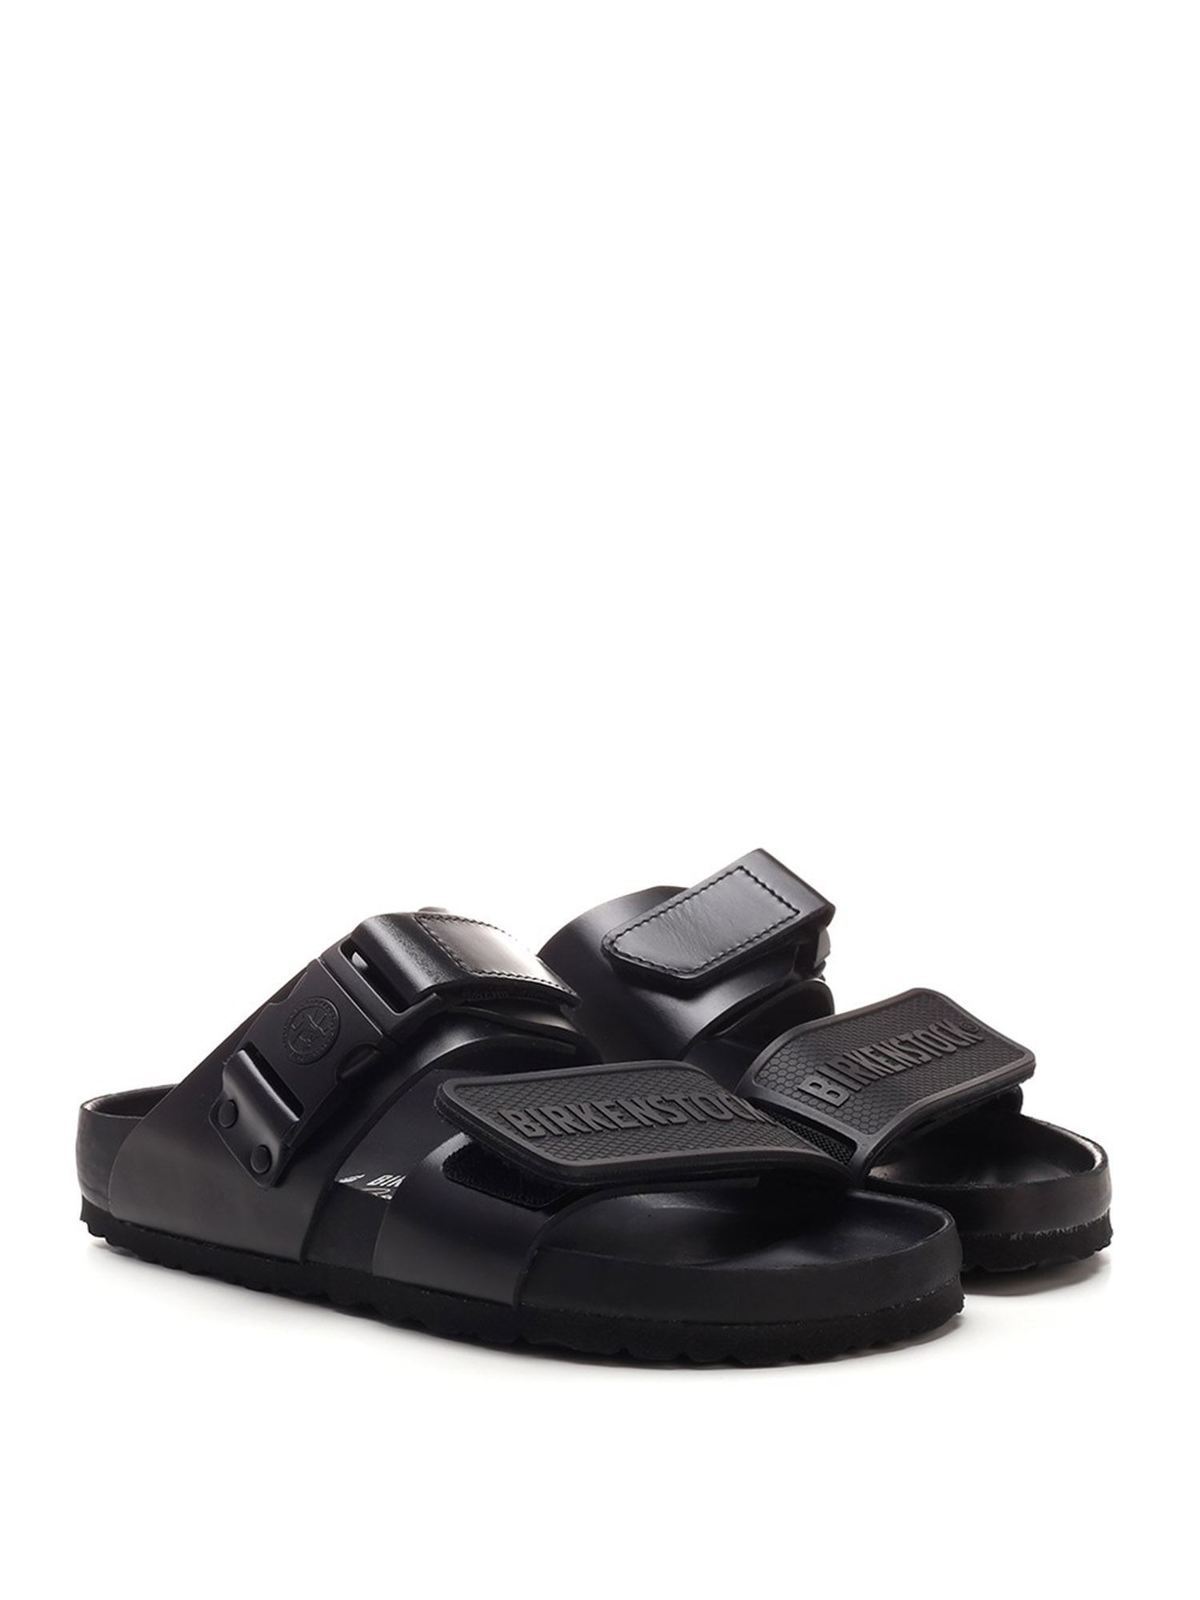 Sandals Rick Owens Hun - Rotterdam sandals in black - BM21S68102085709